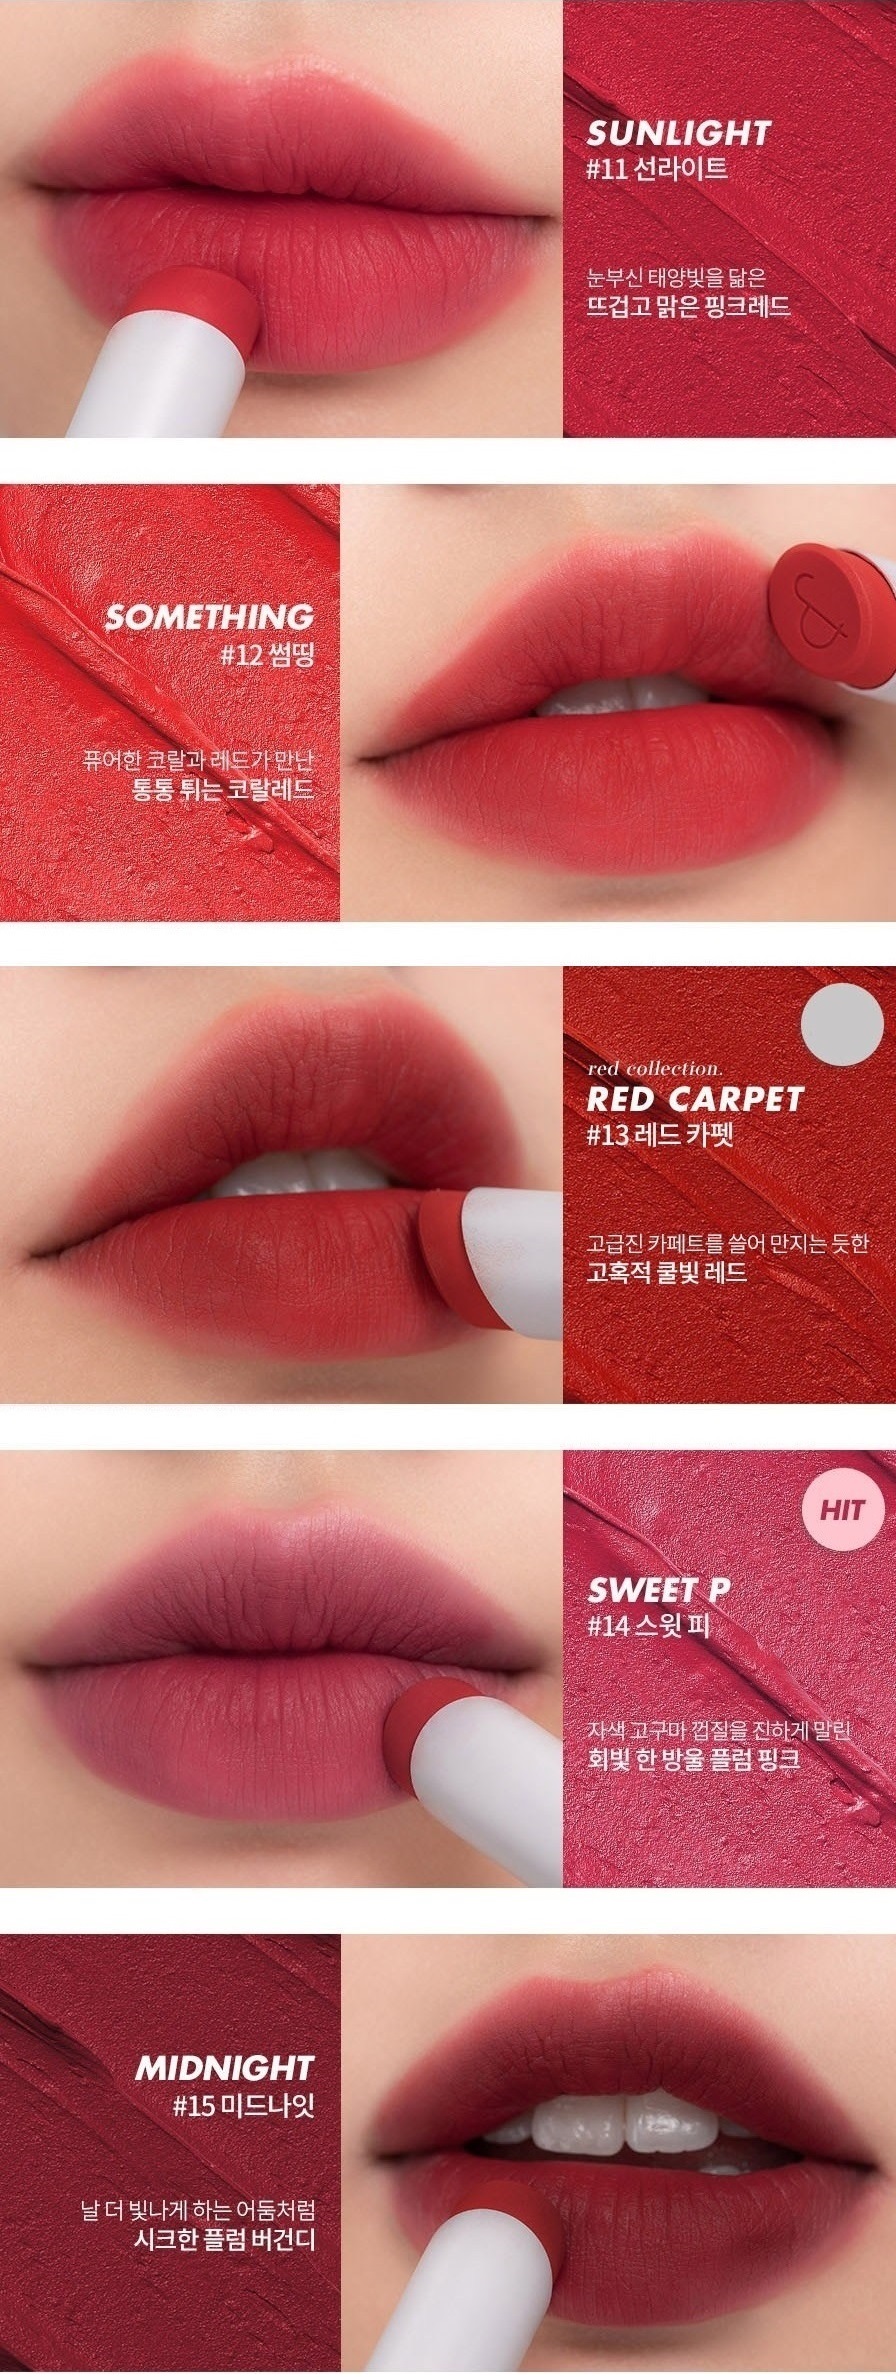 ROMAND Zero Matte Lipstick Sunlight Something Red Carpet Sweet P Midnight